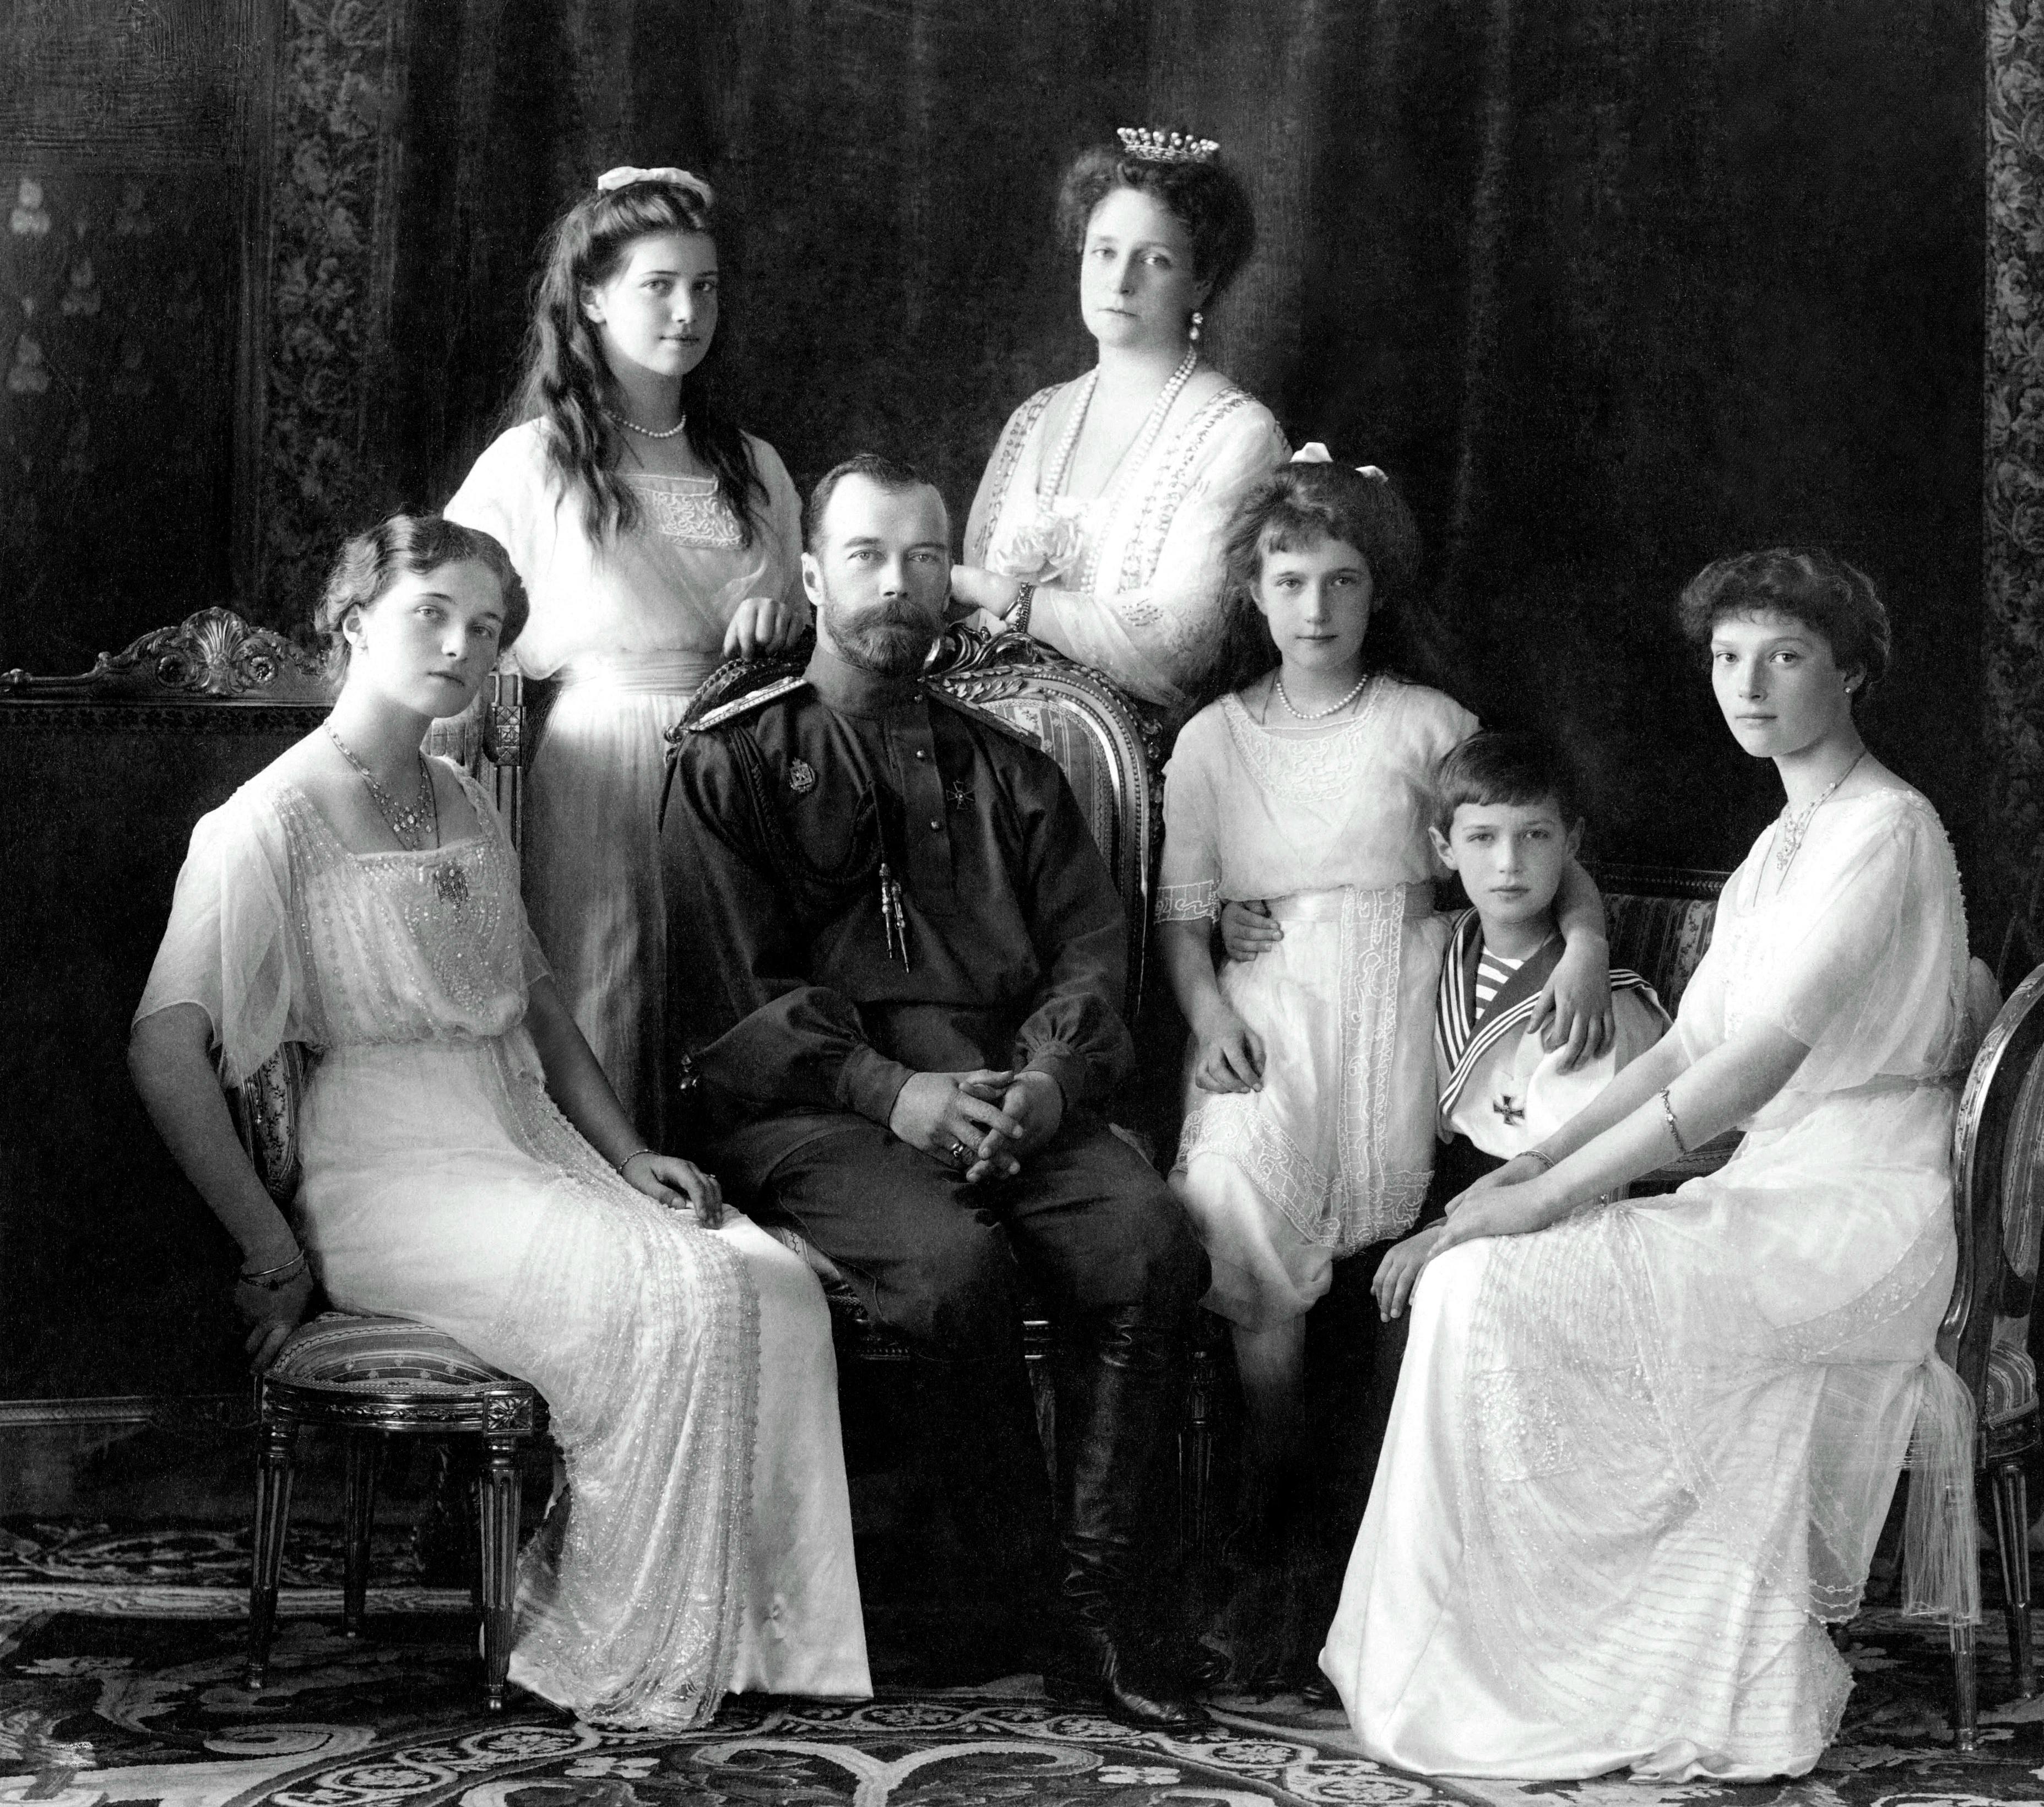 Nicholas II of Russia with the family (left to right): Olga, Maria, Nicholas II, Alexandra Fyodorovna, Anastasia, Alexei, and Tatiana. Livadiya, Crimea, 1913. Public domain via Wikimedia Commons.